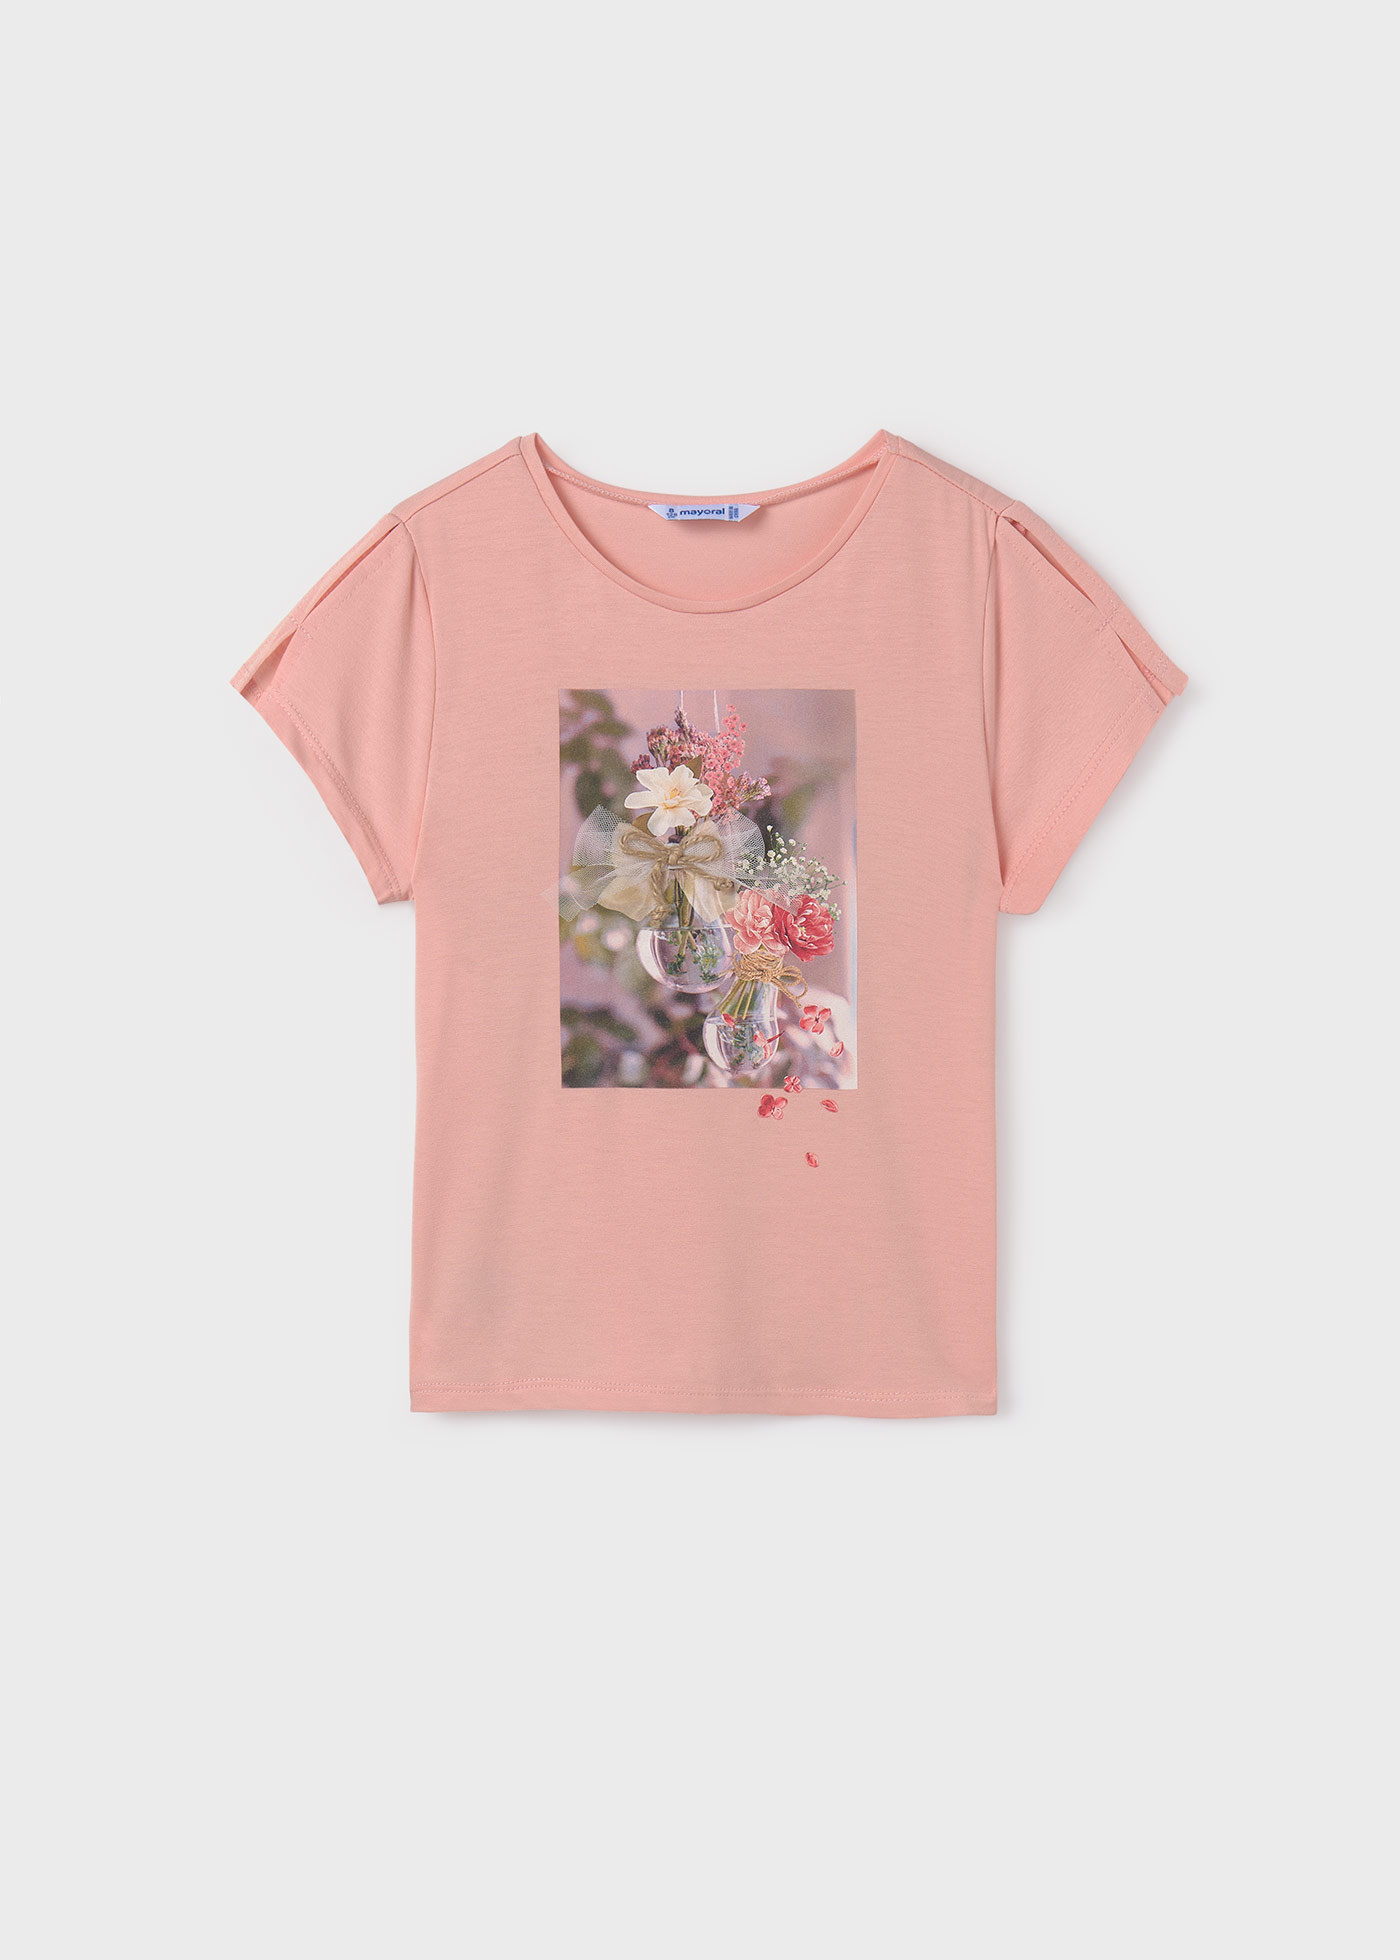 T-Shirt Blumen Teenager Mädchen